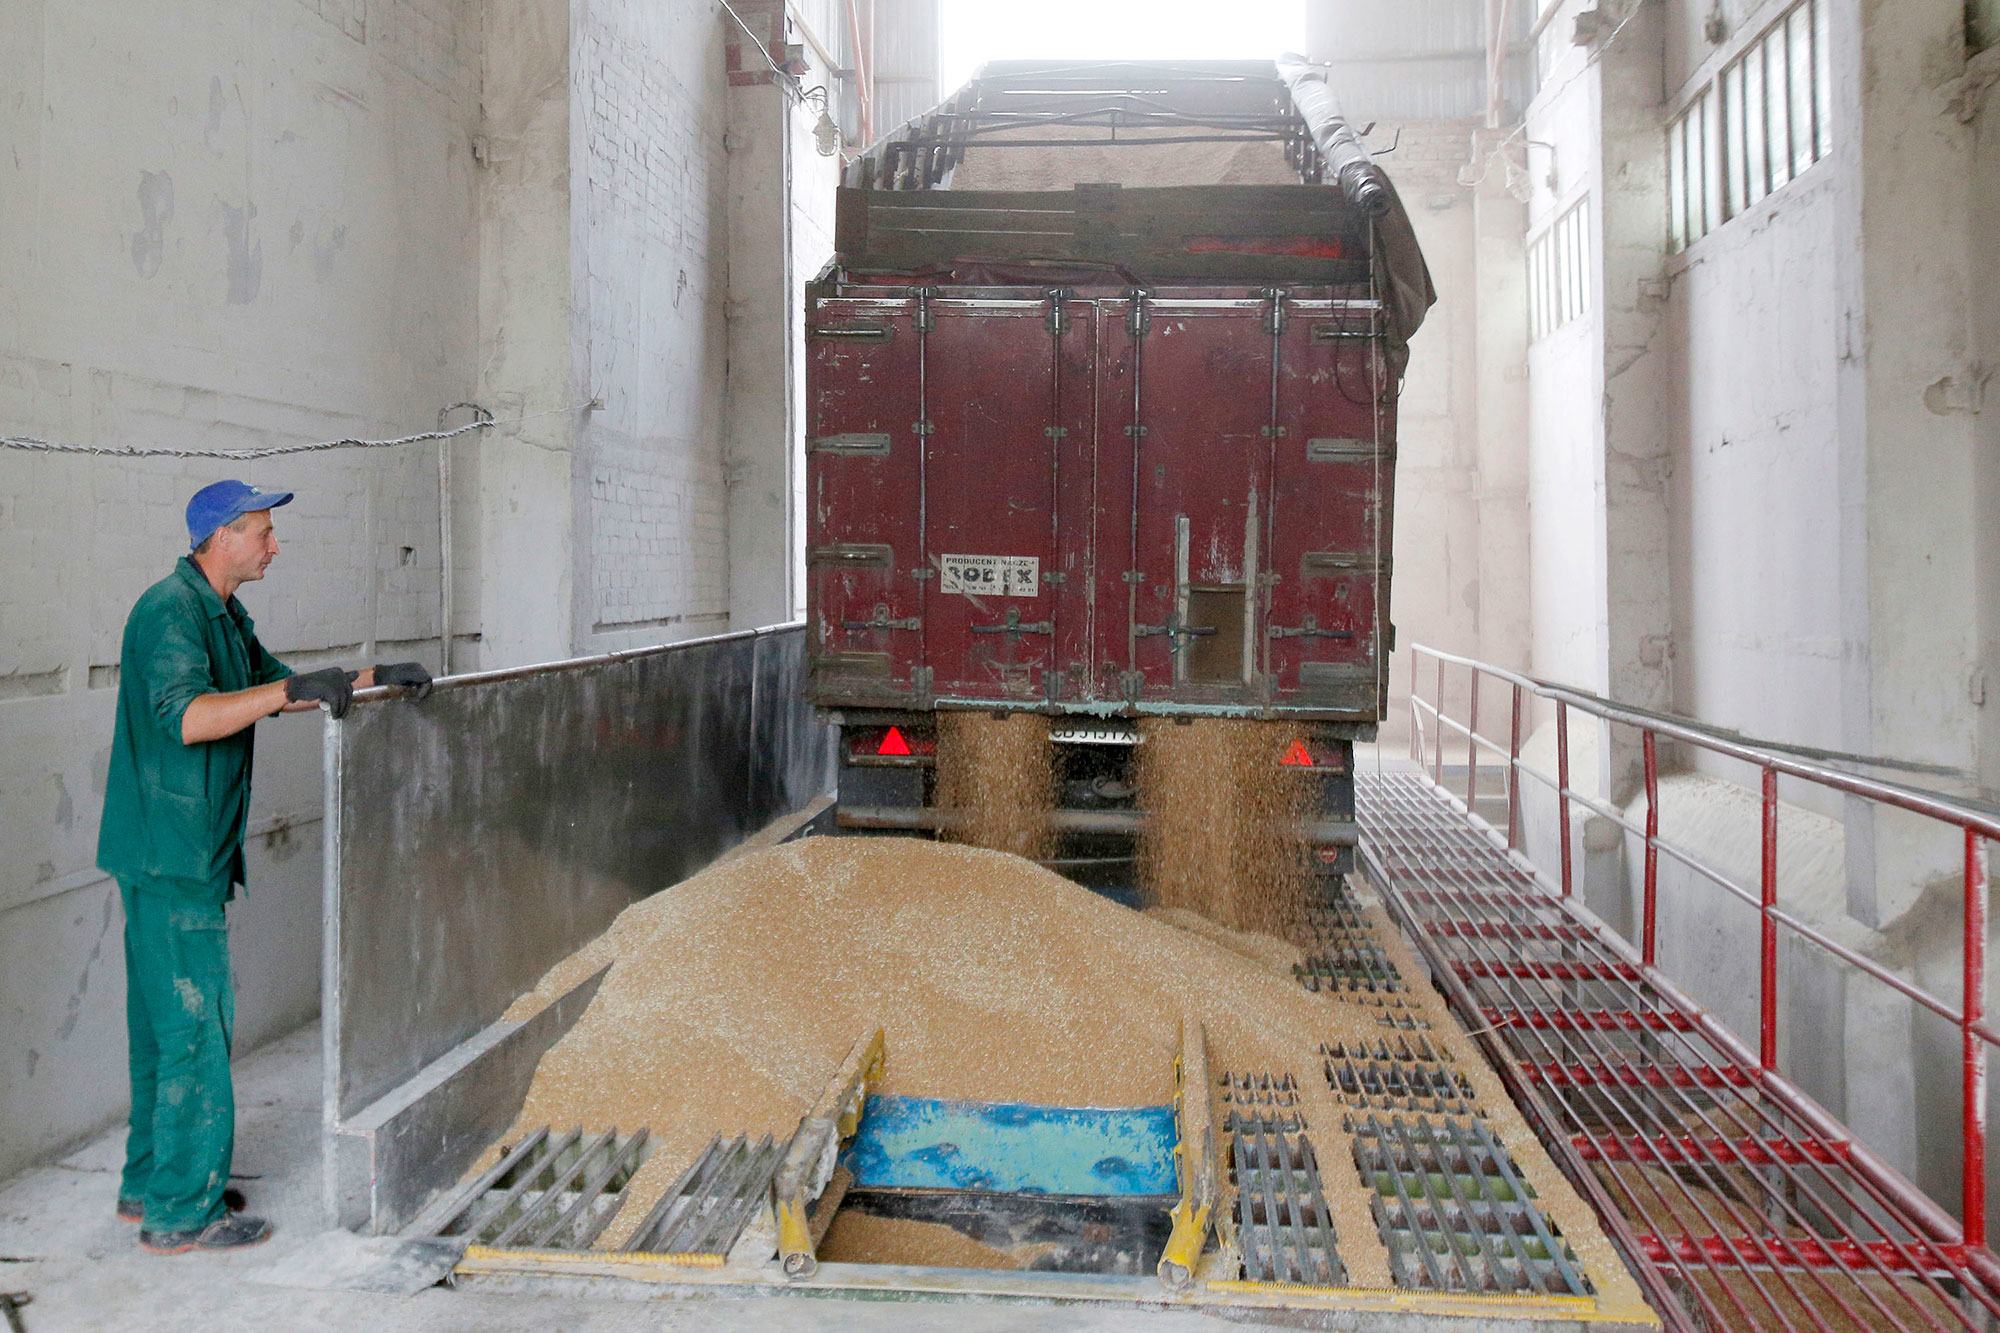 من الأرشيف: معالجة القمح في مخزن الحبوب في تشيرنيهيف، أوكرانيا